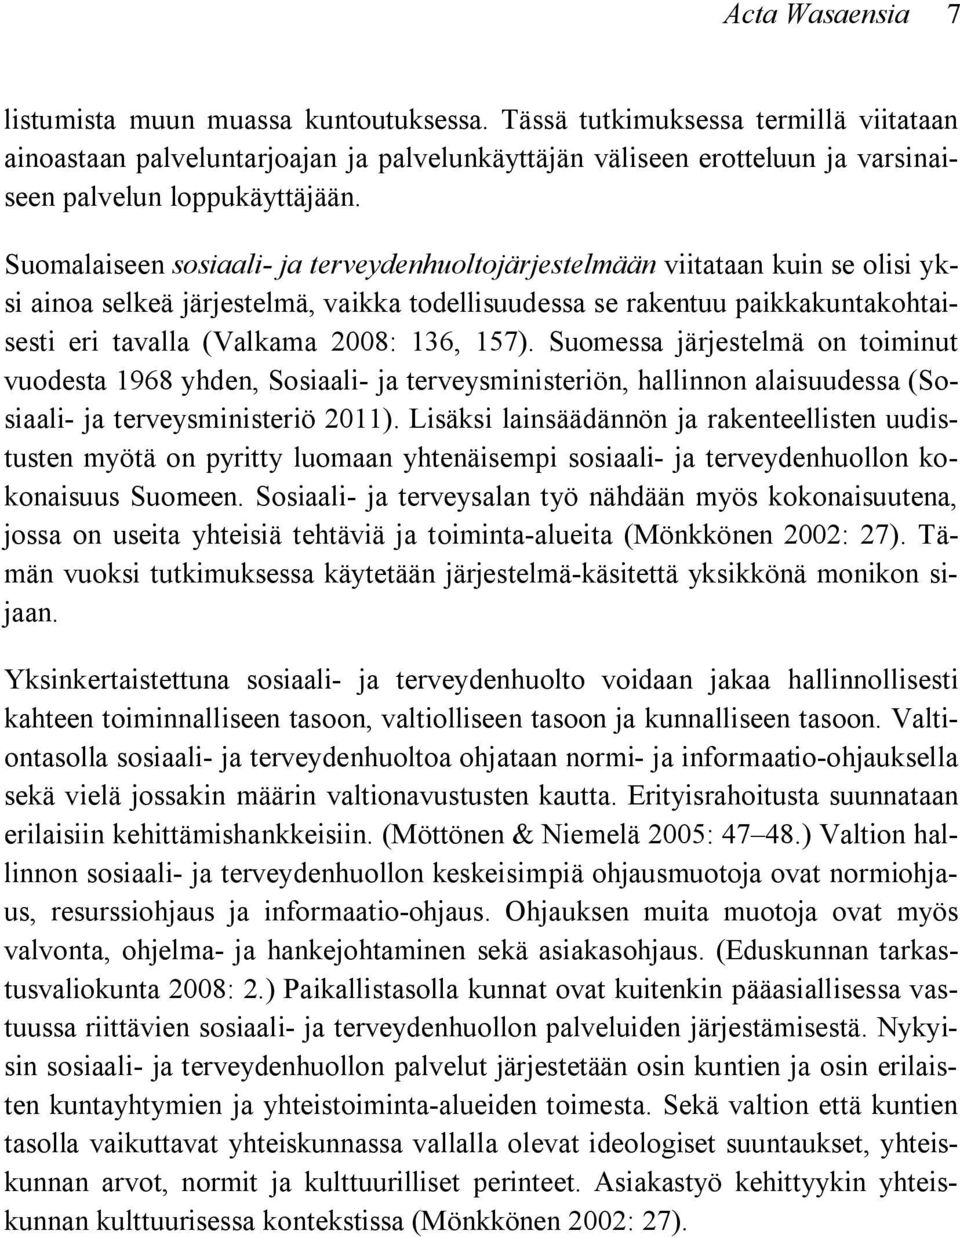 Suomalaiseen sosiaali- ja terveydenhuoltojärjestelmään viitataan kuin se olisi yksi ainoa selkeä järjestelmä, vaikka todellisuudessa se rakentuu paikkakuntakohtaisesti eri tavalla (Valkama 2008: 136,